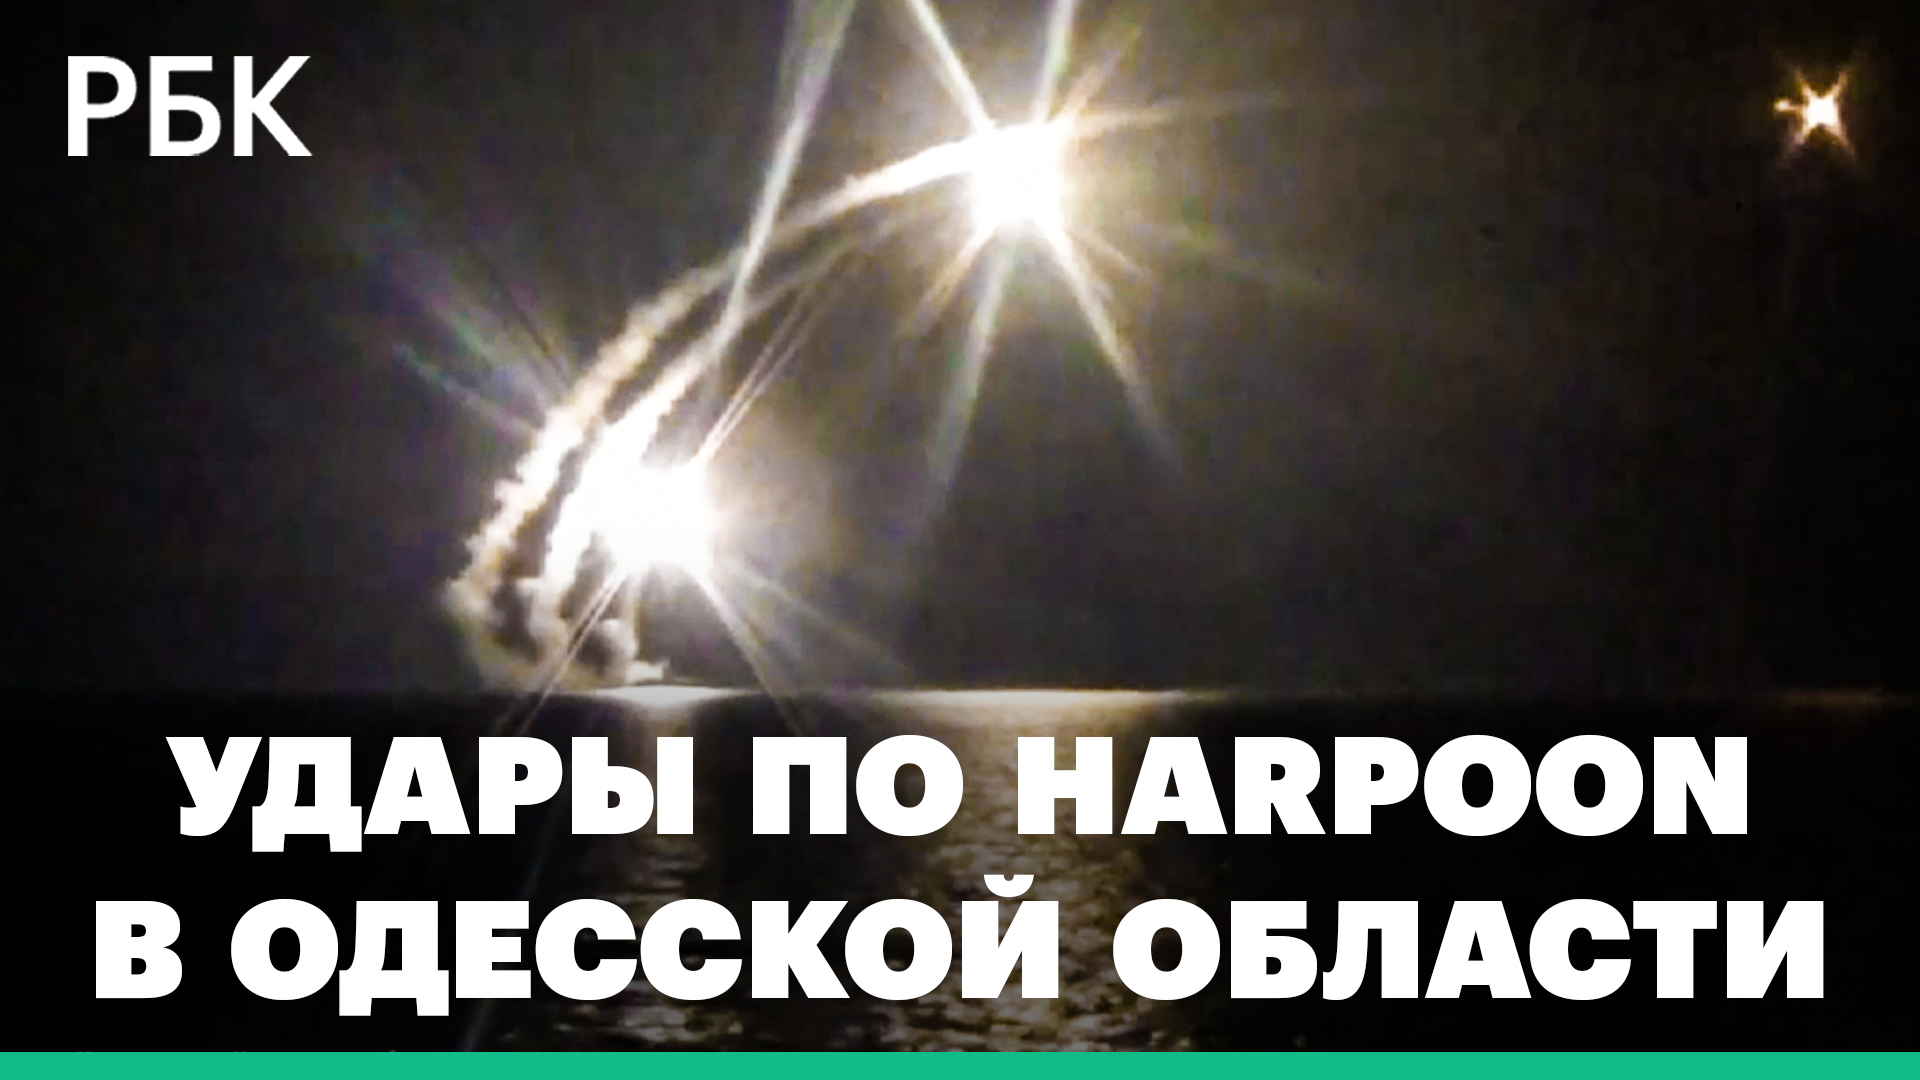 ВКС России уничтожили пусковую установку Harpoon производства США, - Минобороны